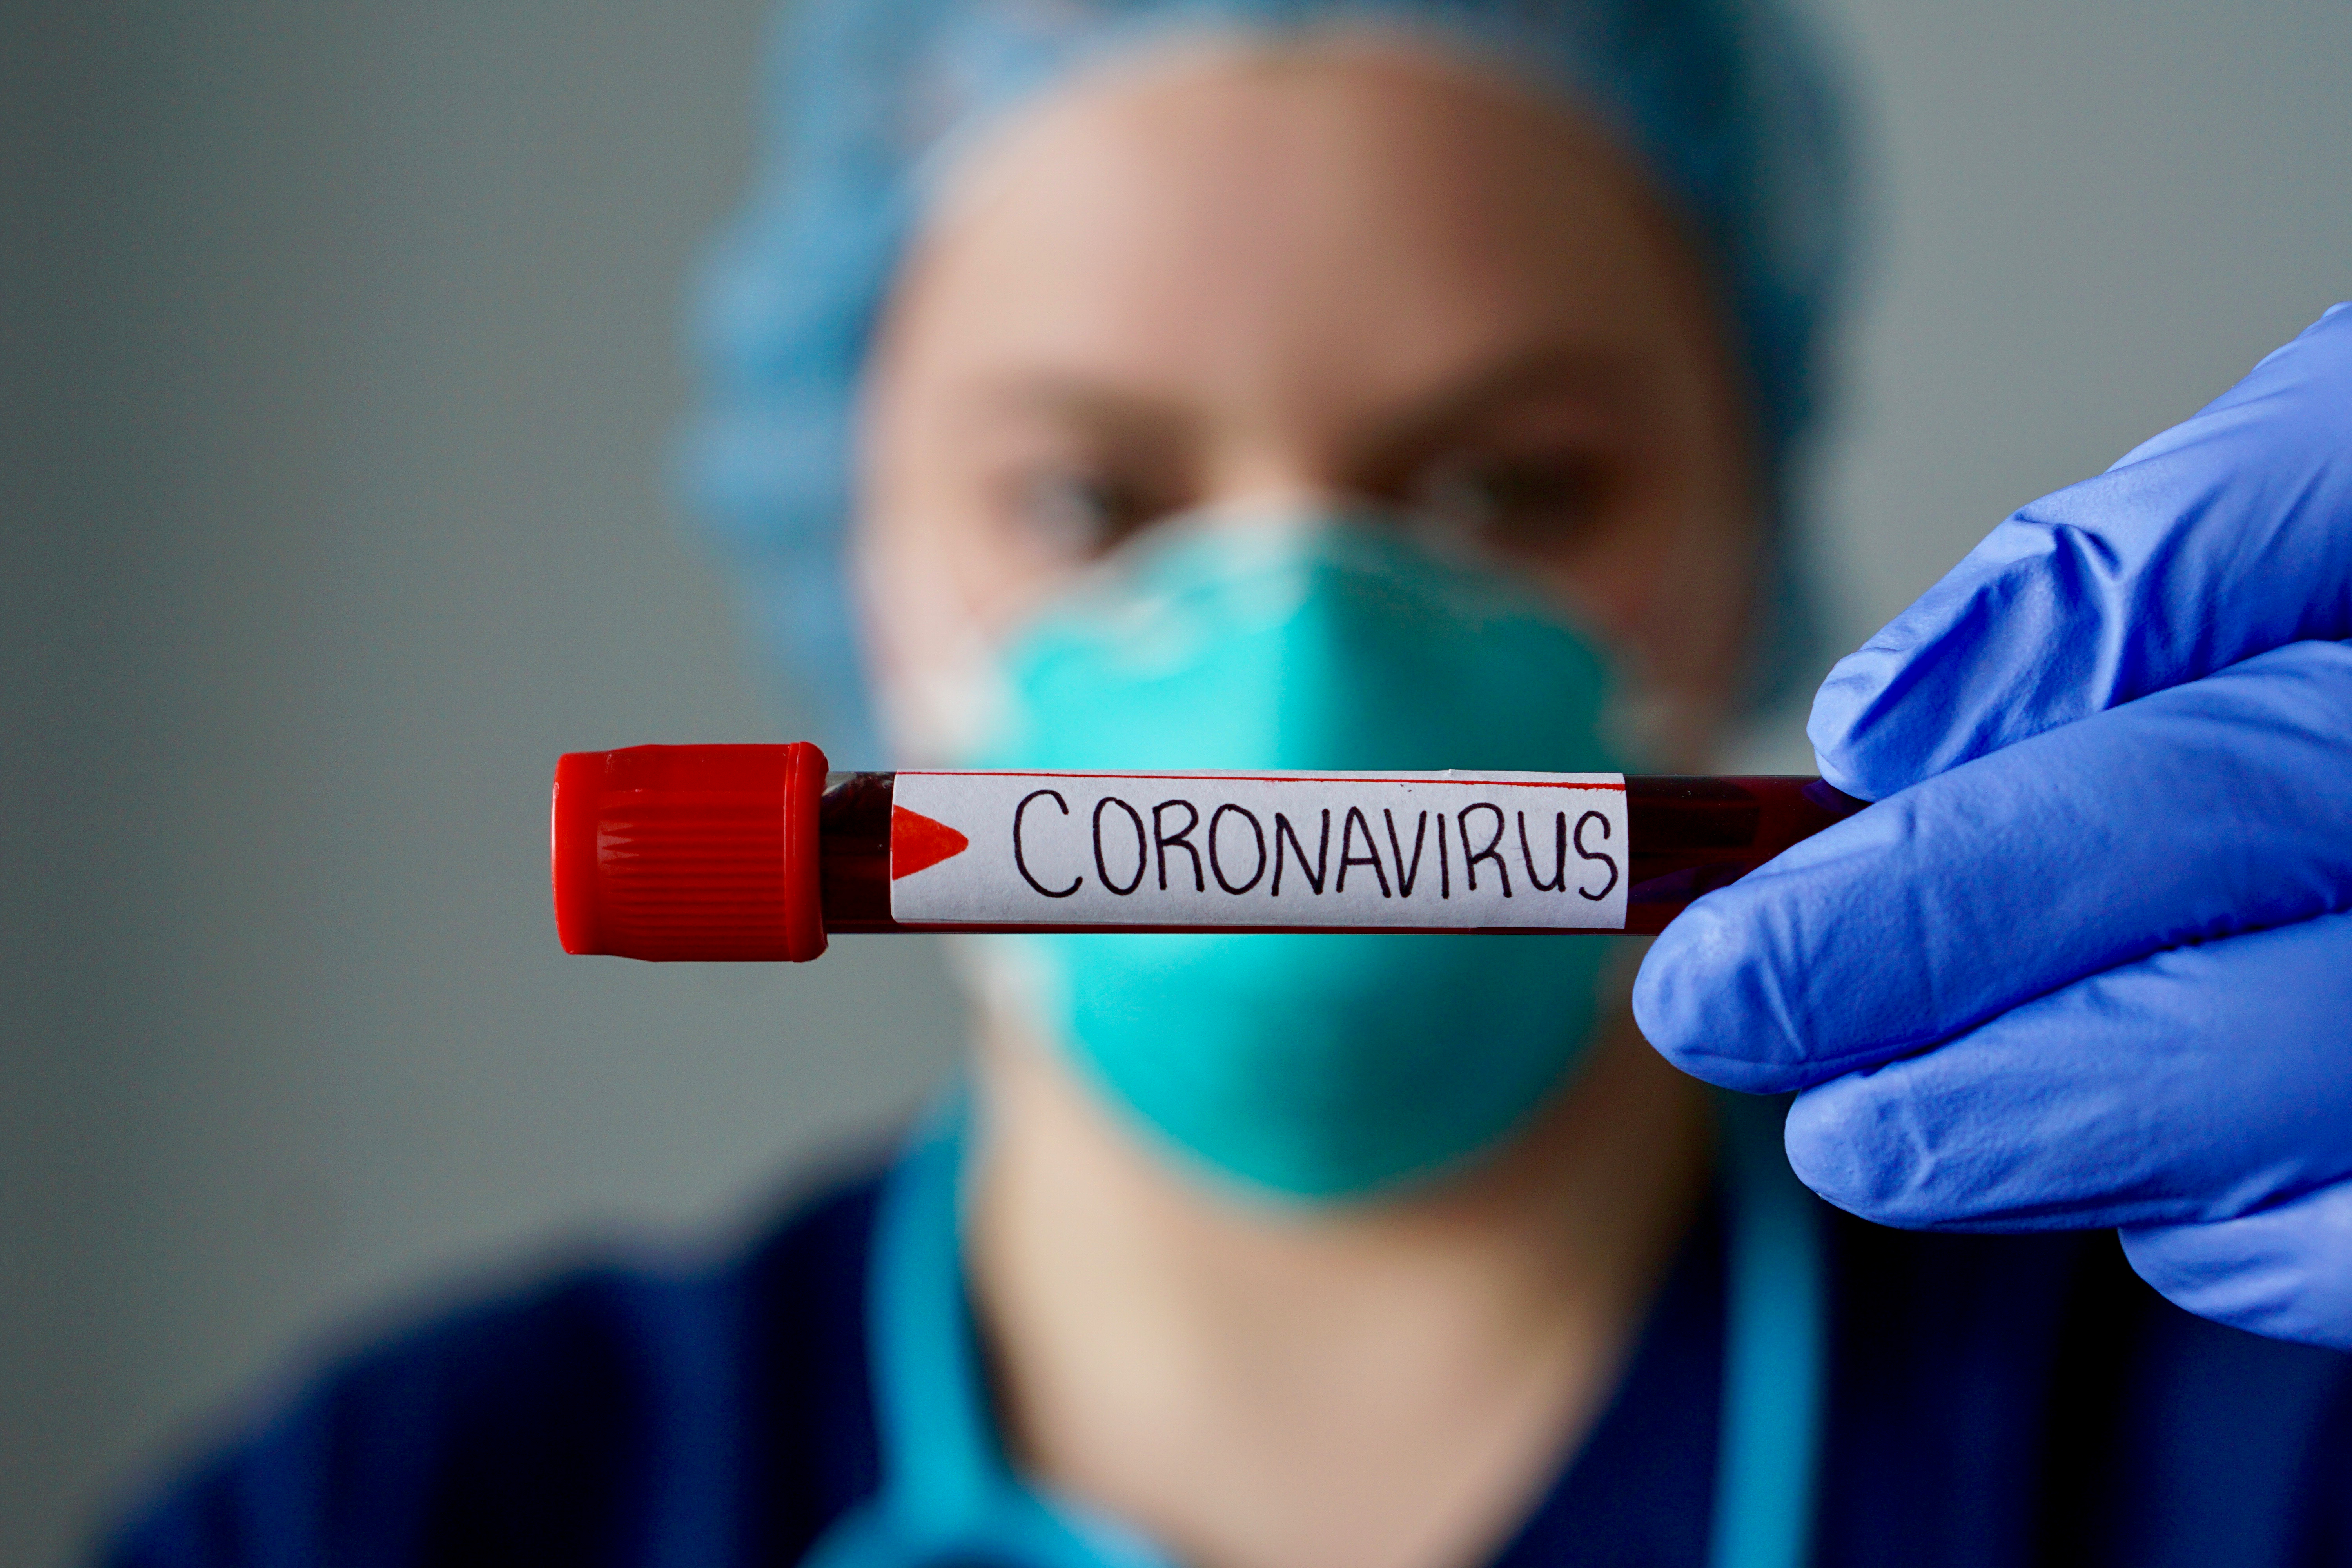 Tetap Tenang dan Waspada atas Outbreak Virus Corona di China